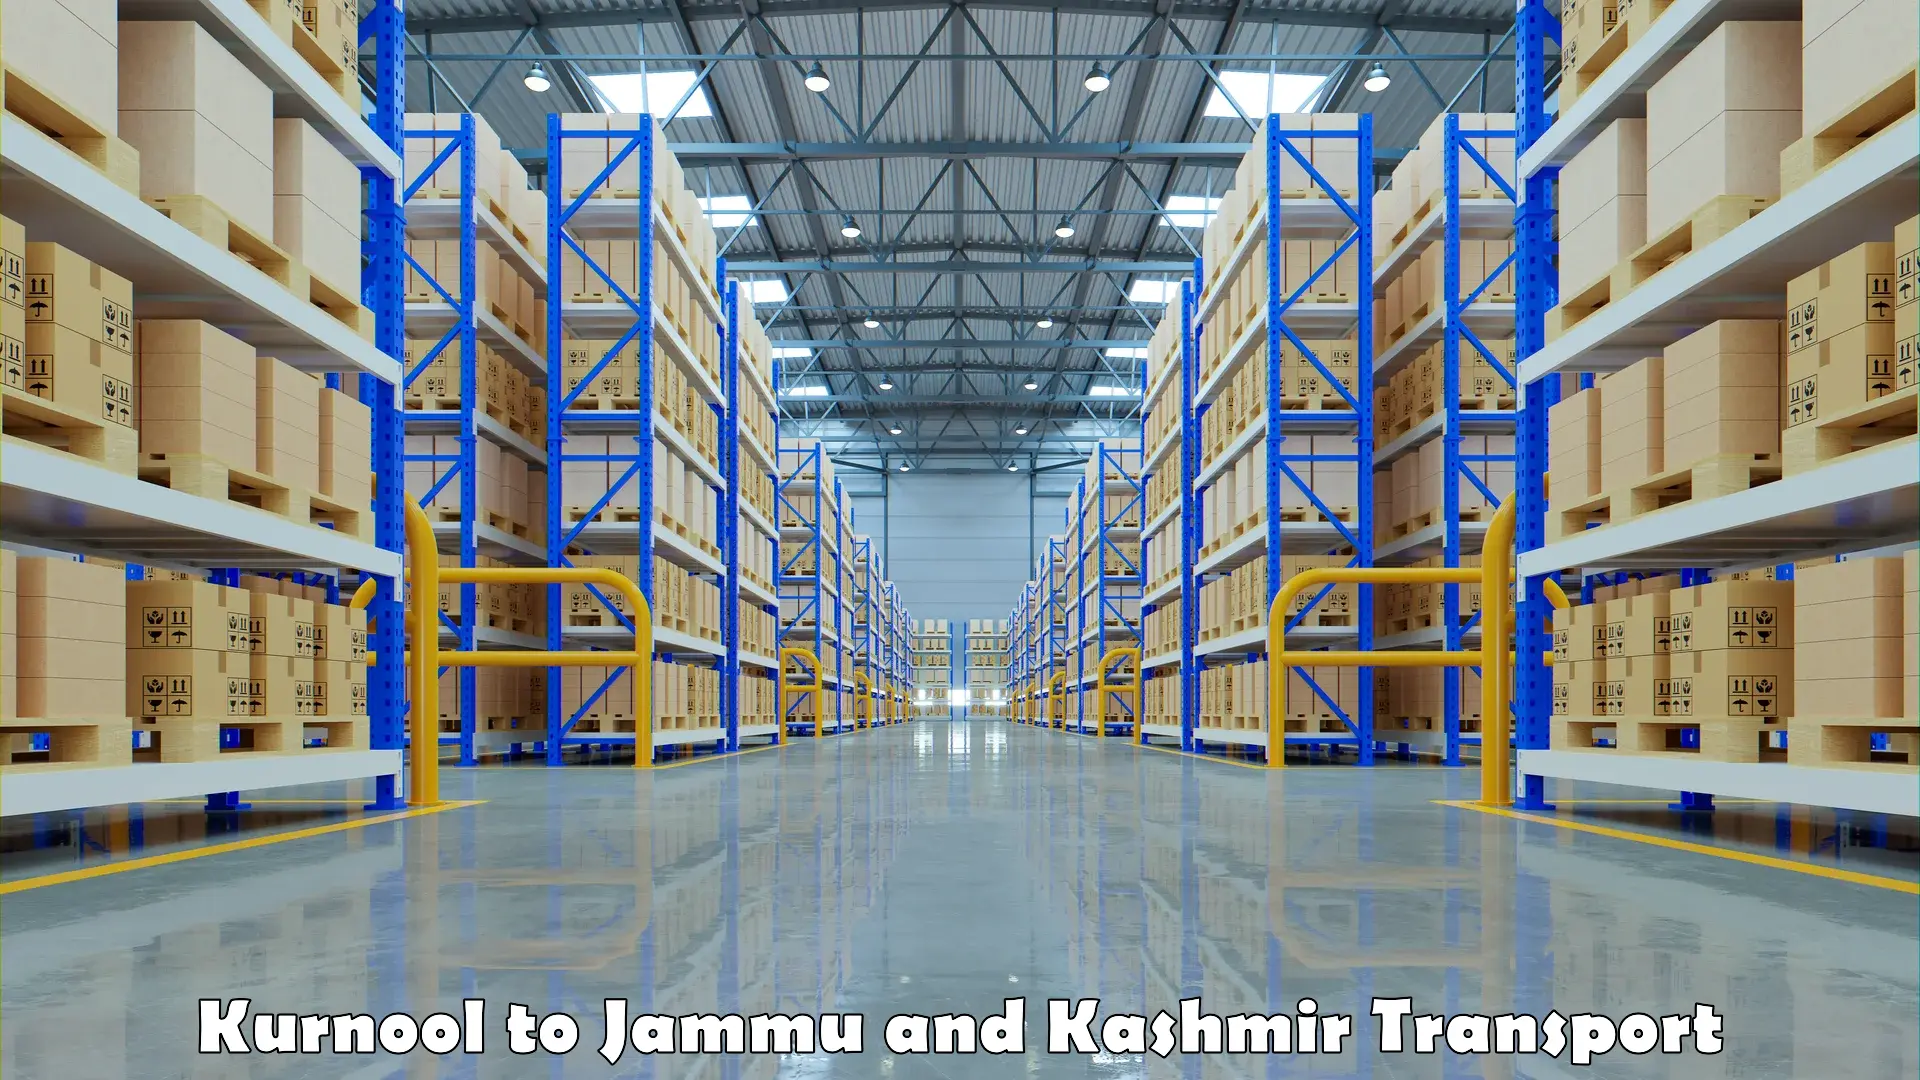 Express transport services Kurnool to Jammu and Kashmir